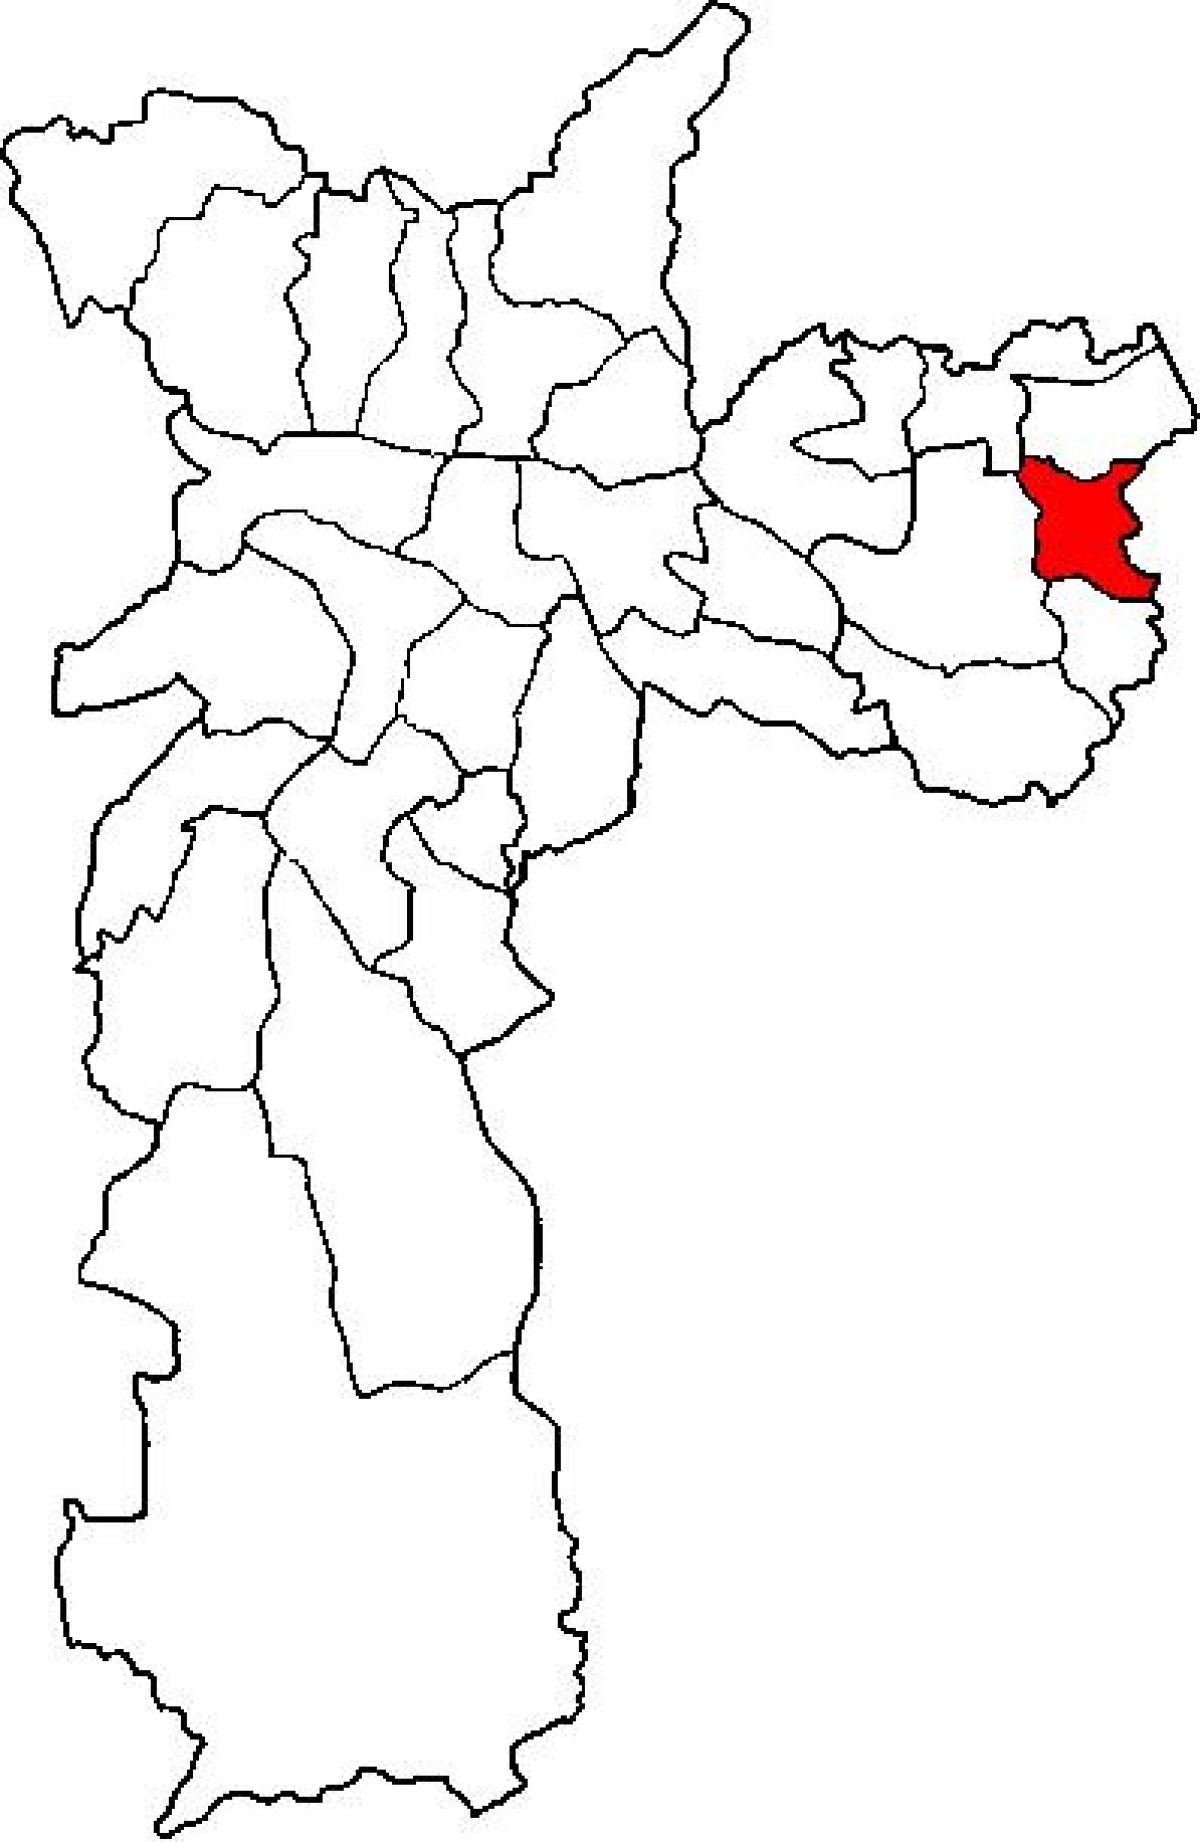 Mapa de Guaianases sots-prefectura de São Paulo